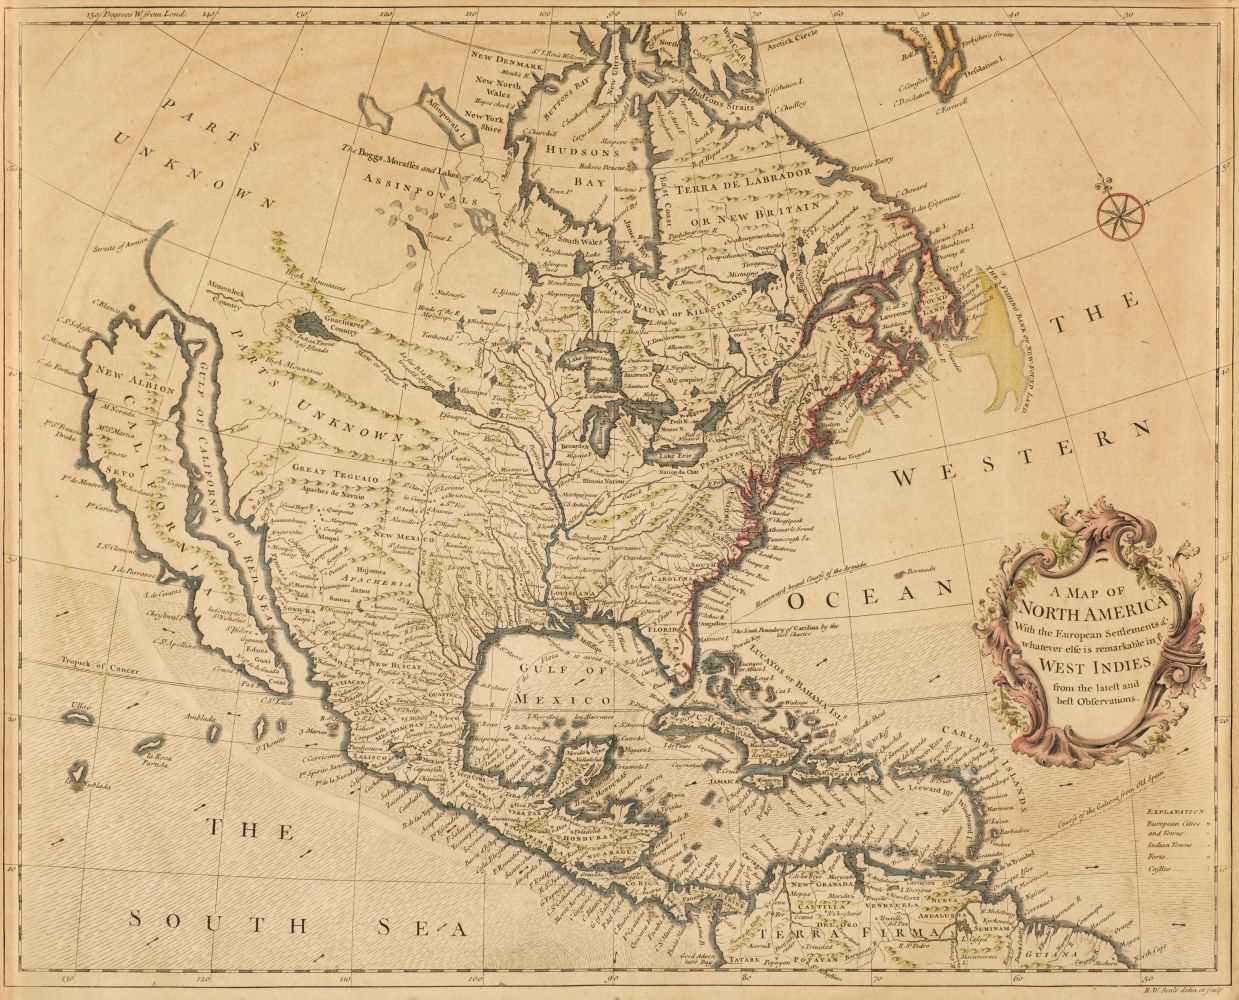 Lot 120 - North America. Seale (R. W.), A Map of North America..., circa 1747